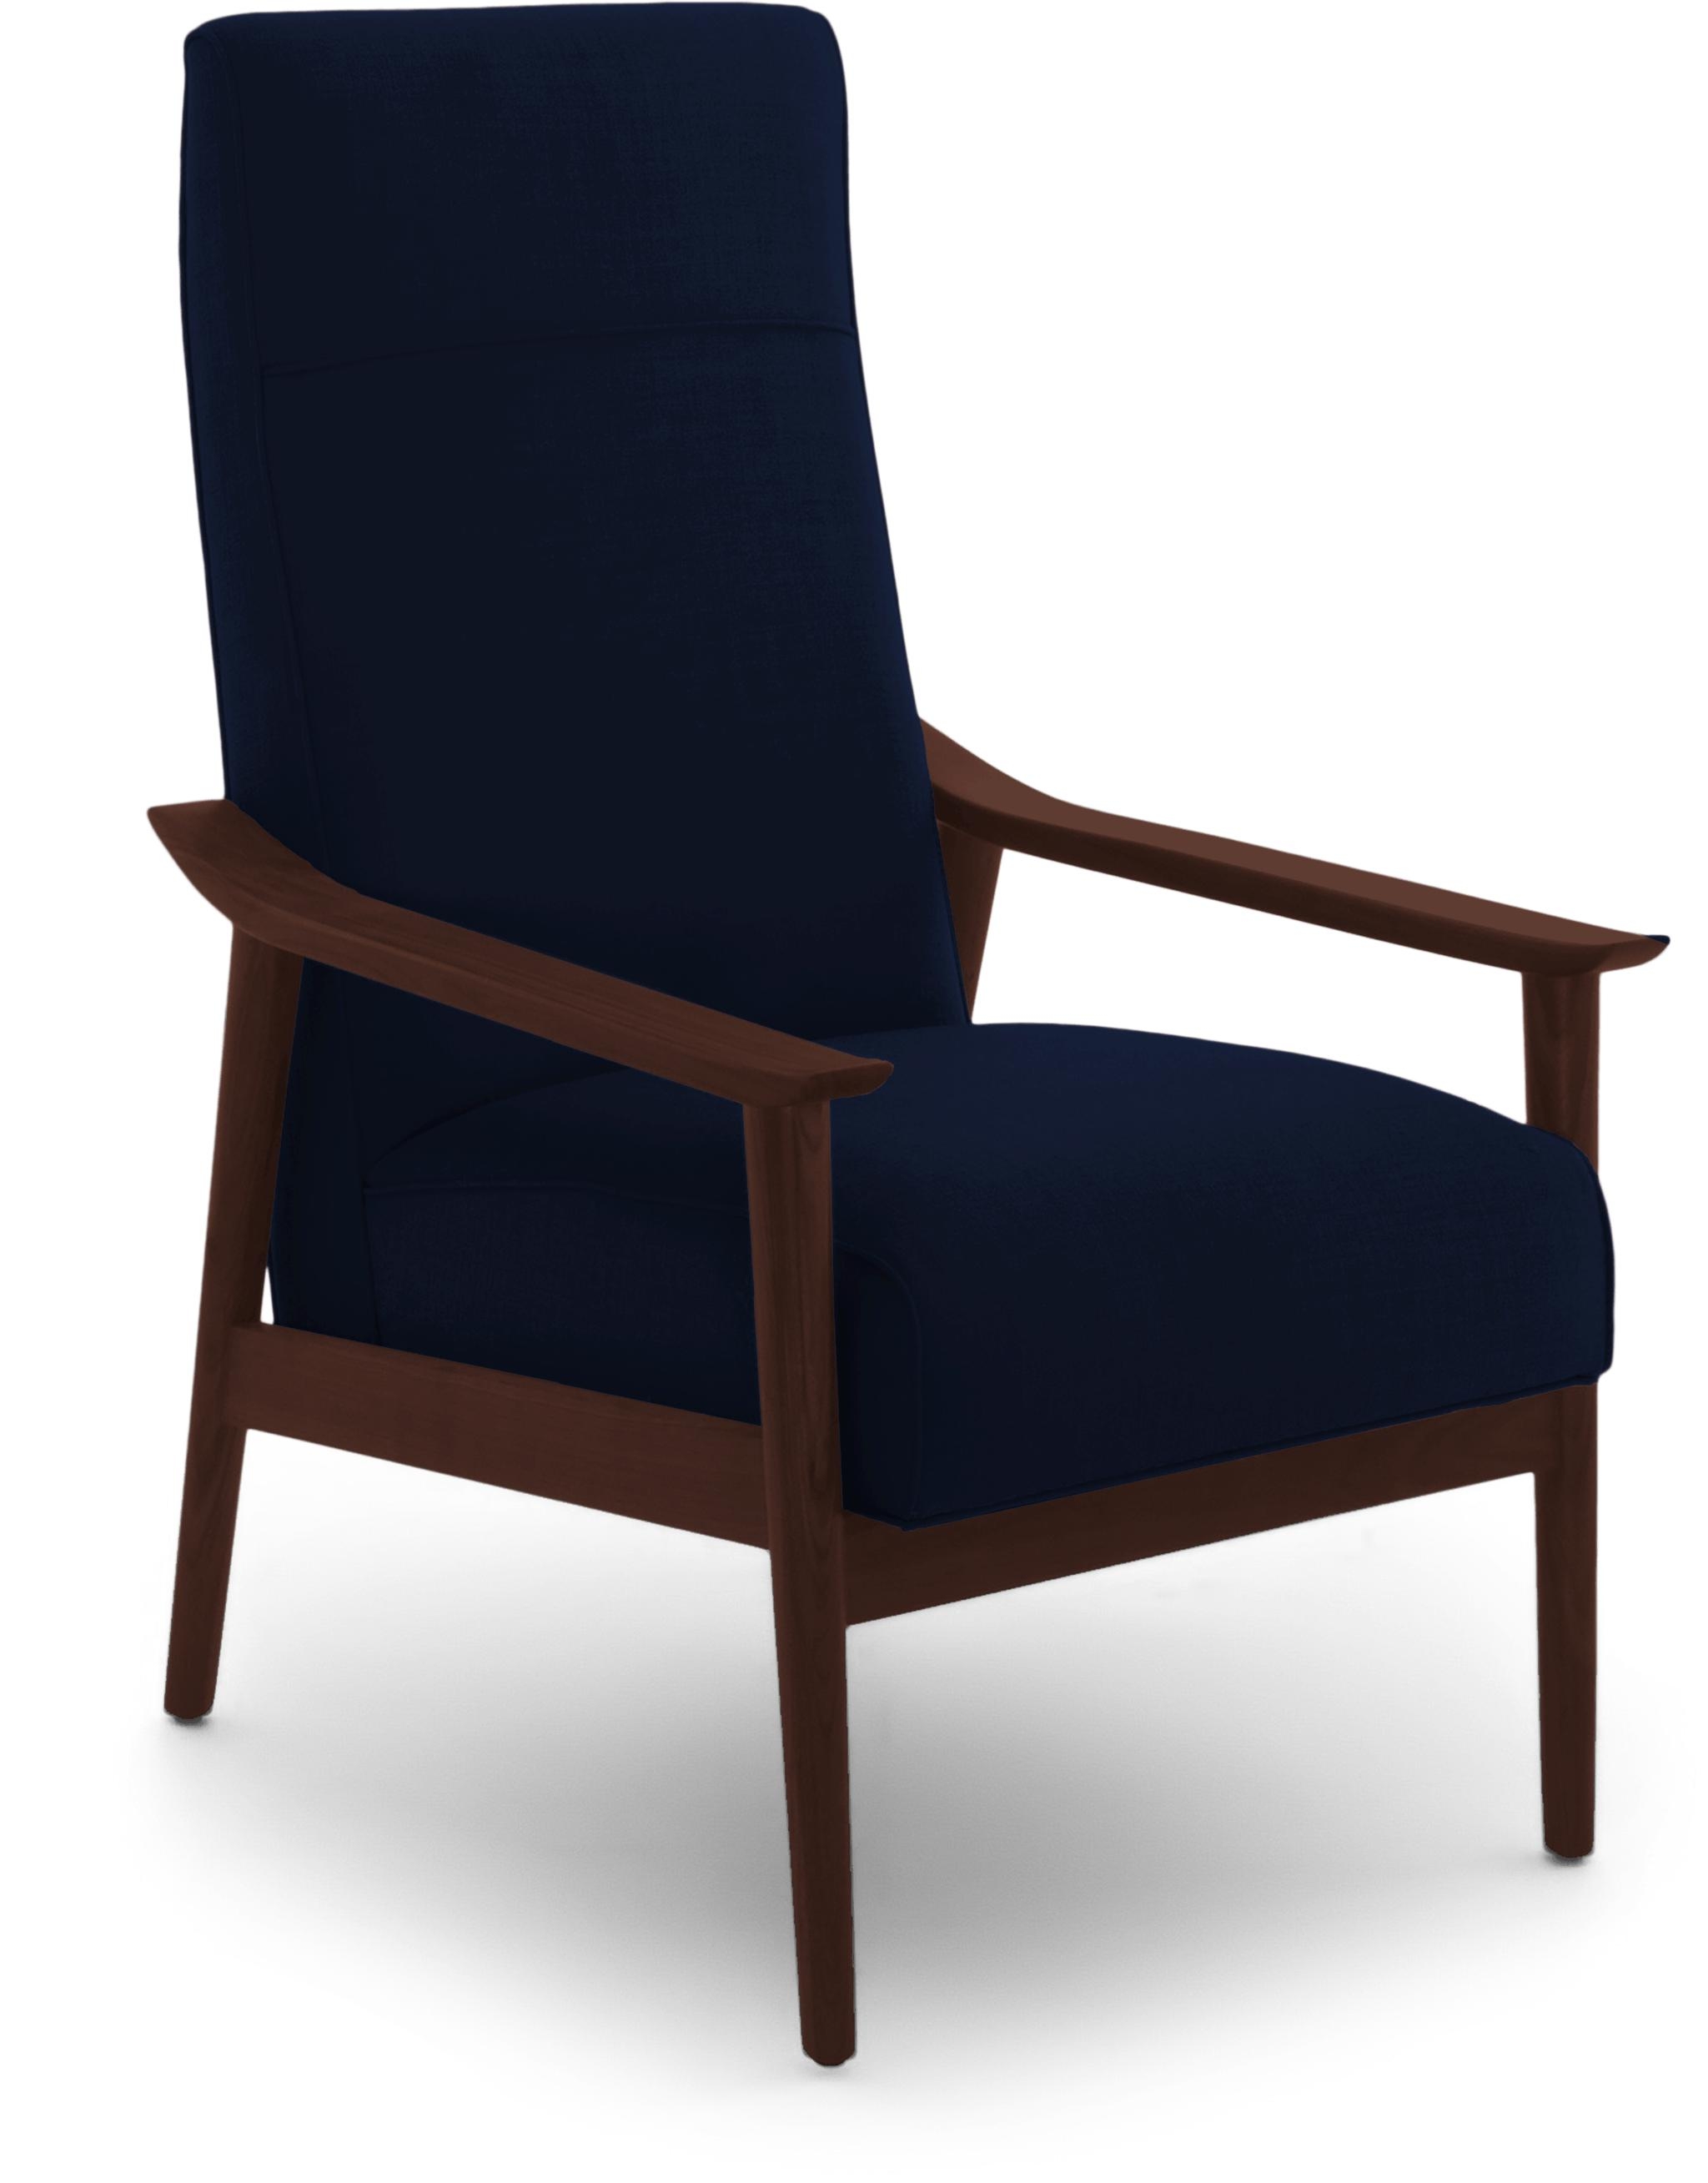 Blue McKinley Mid Century Modern Chair - Royale Cobalt - Walnut - Image 1